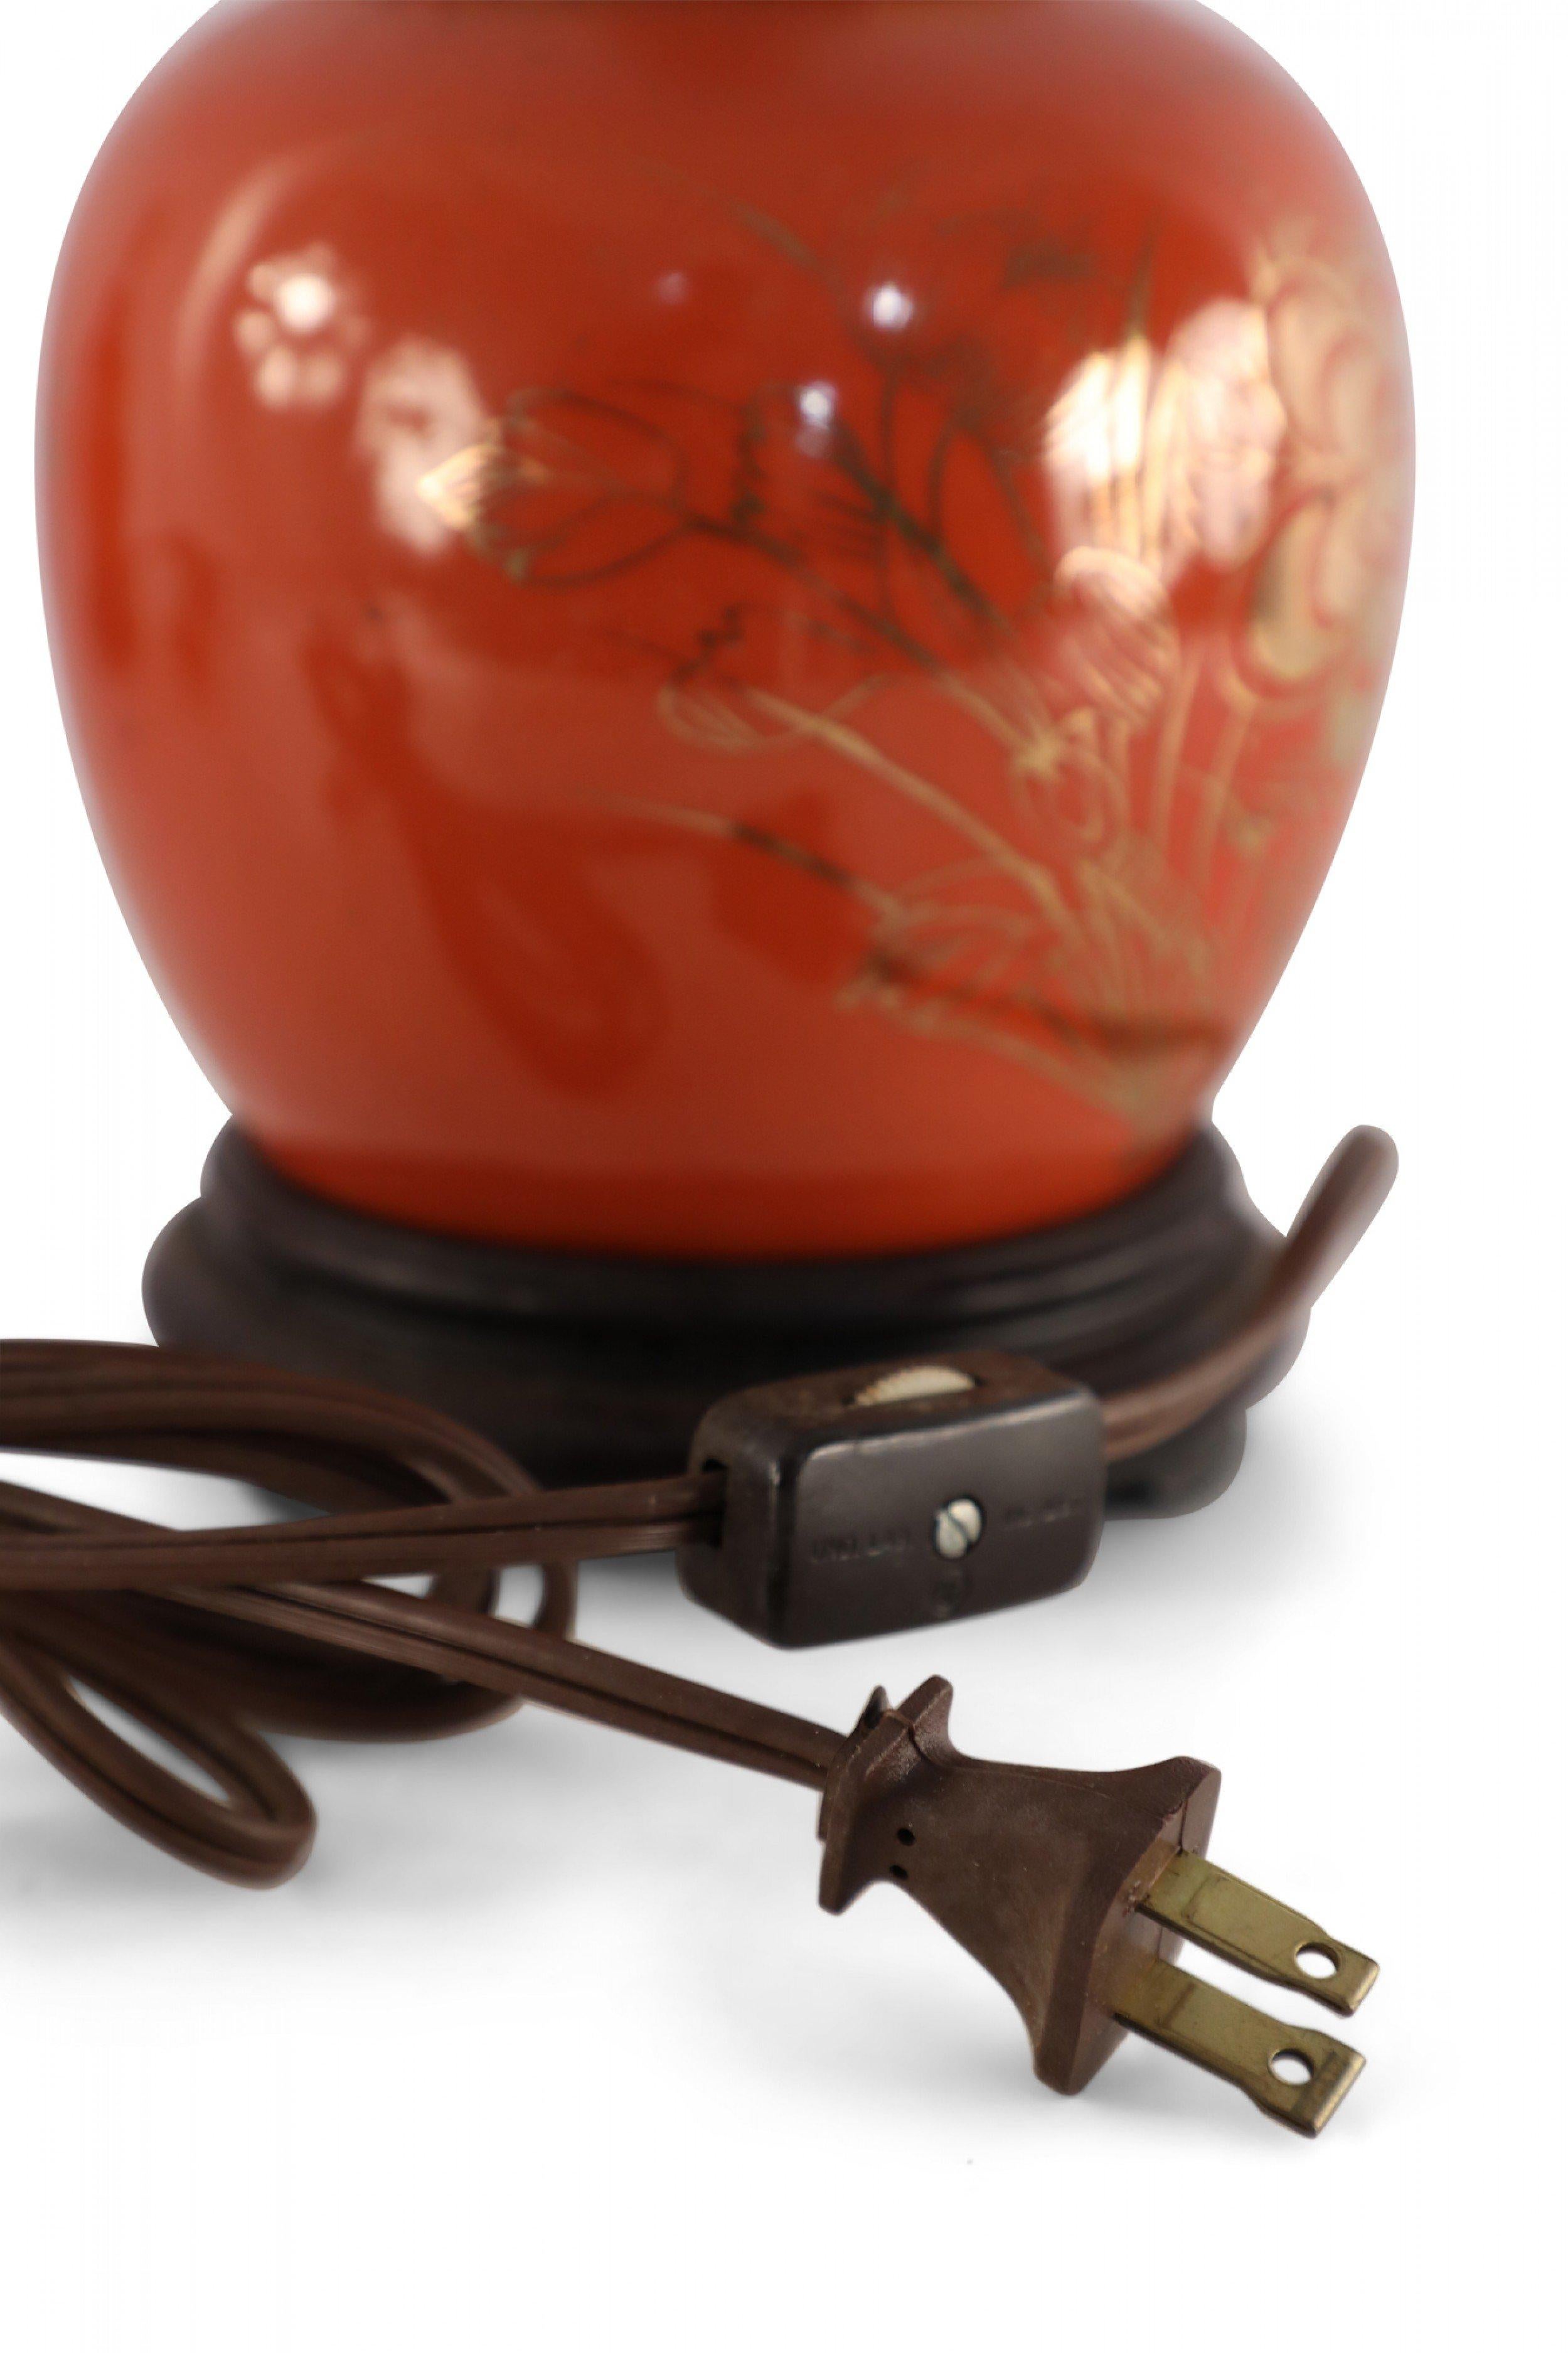 Lampe de table chinoise ancienne (début du 20e siècle) fabriquée à partir d'un vase rond en porcelaine orange lustrée avec un motif de bouquet floral doré, monté sur une base en bois brun et équipé de ferrures en laiton patiné.
 